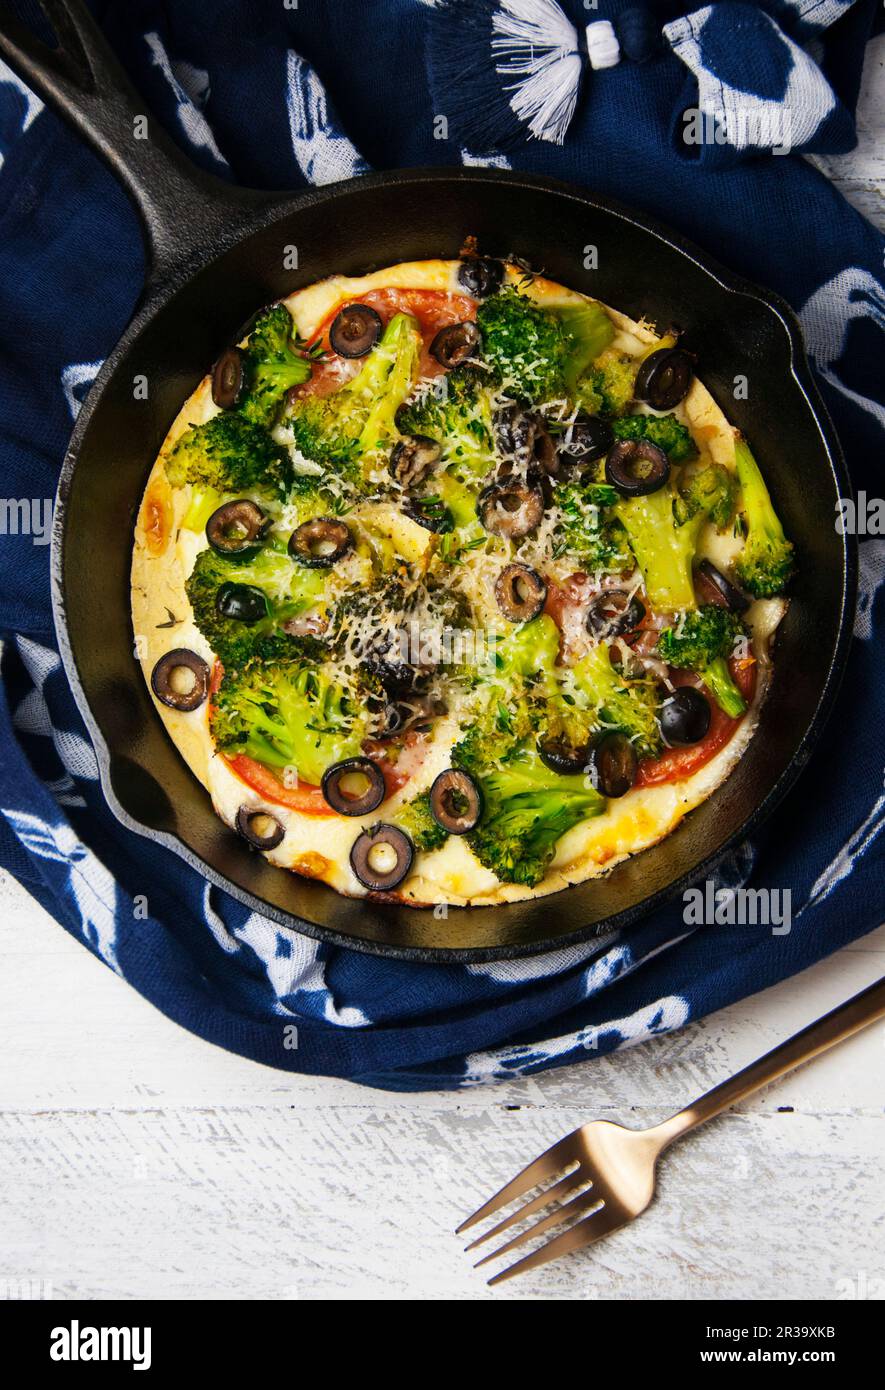 Une pizza de Socca avec des légumes dans une poêle en fonte Banque D'Images